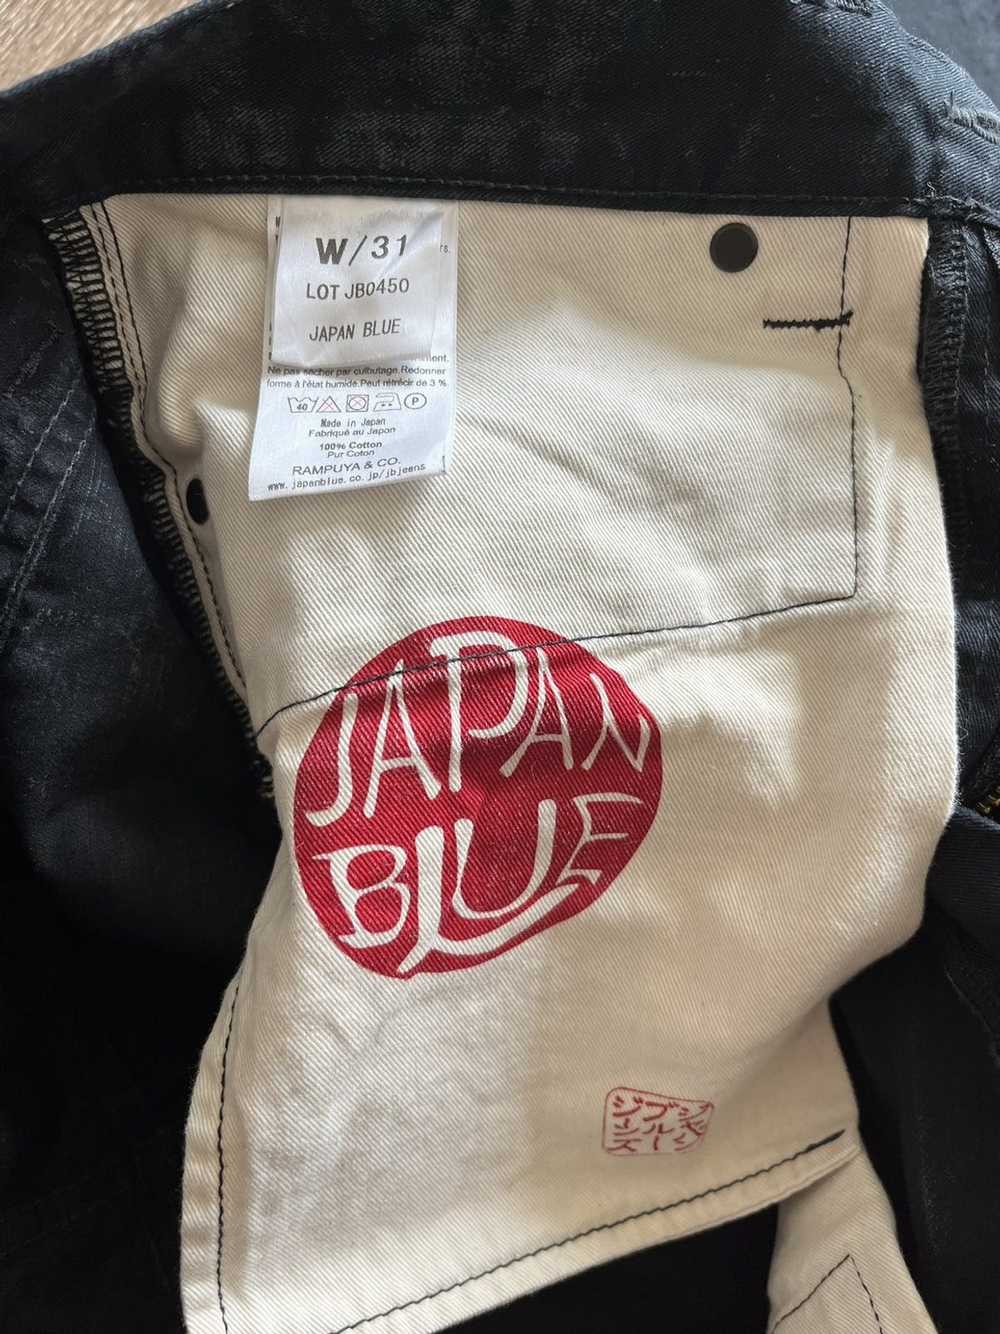 Japan Blue Japan Blue Pants Stretch Jeans - image 4